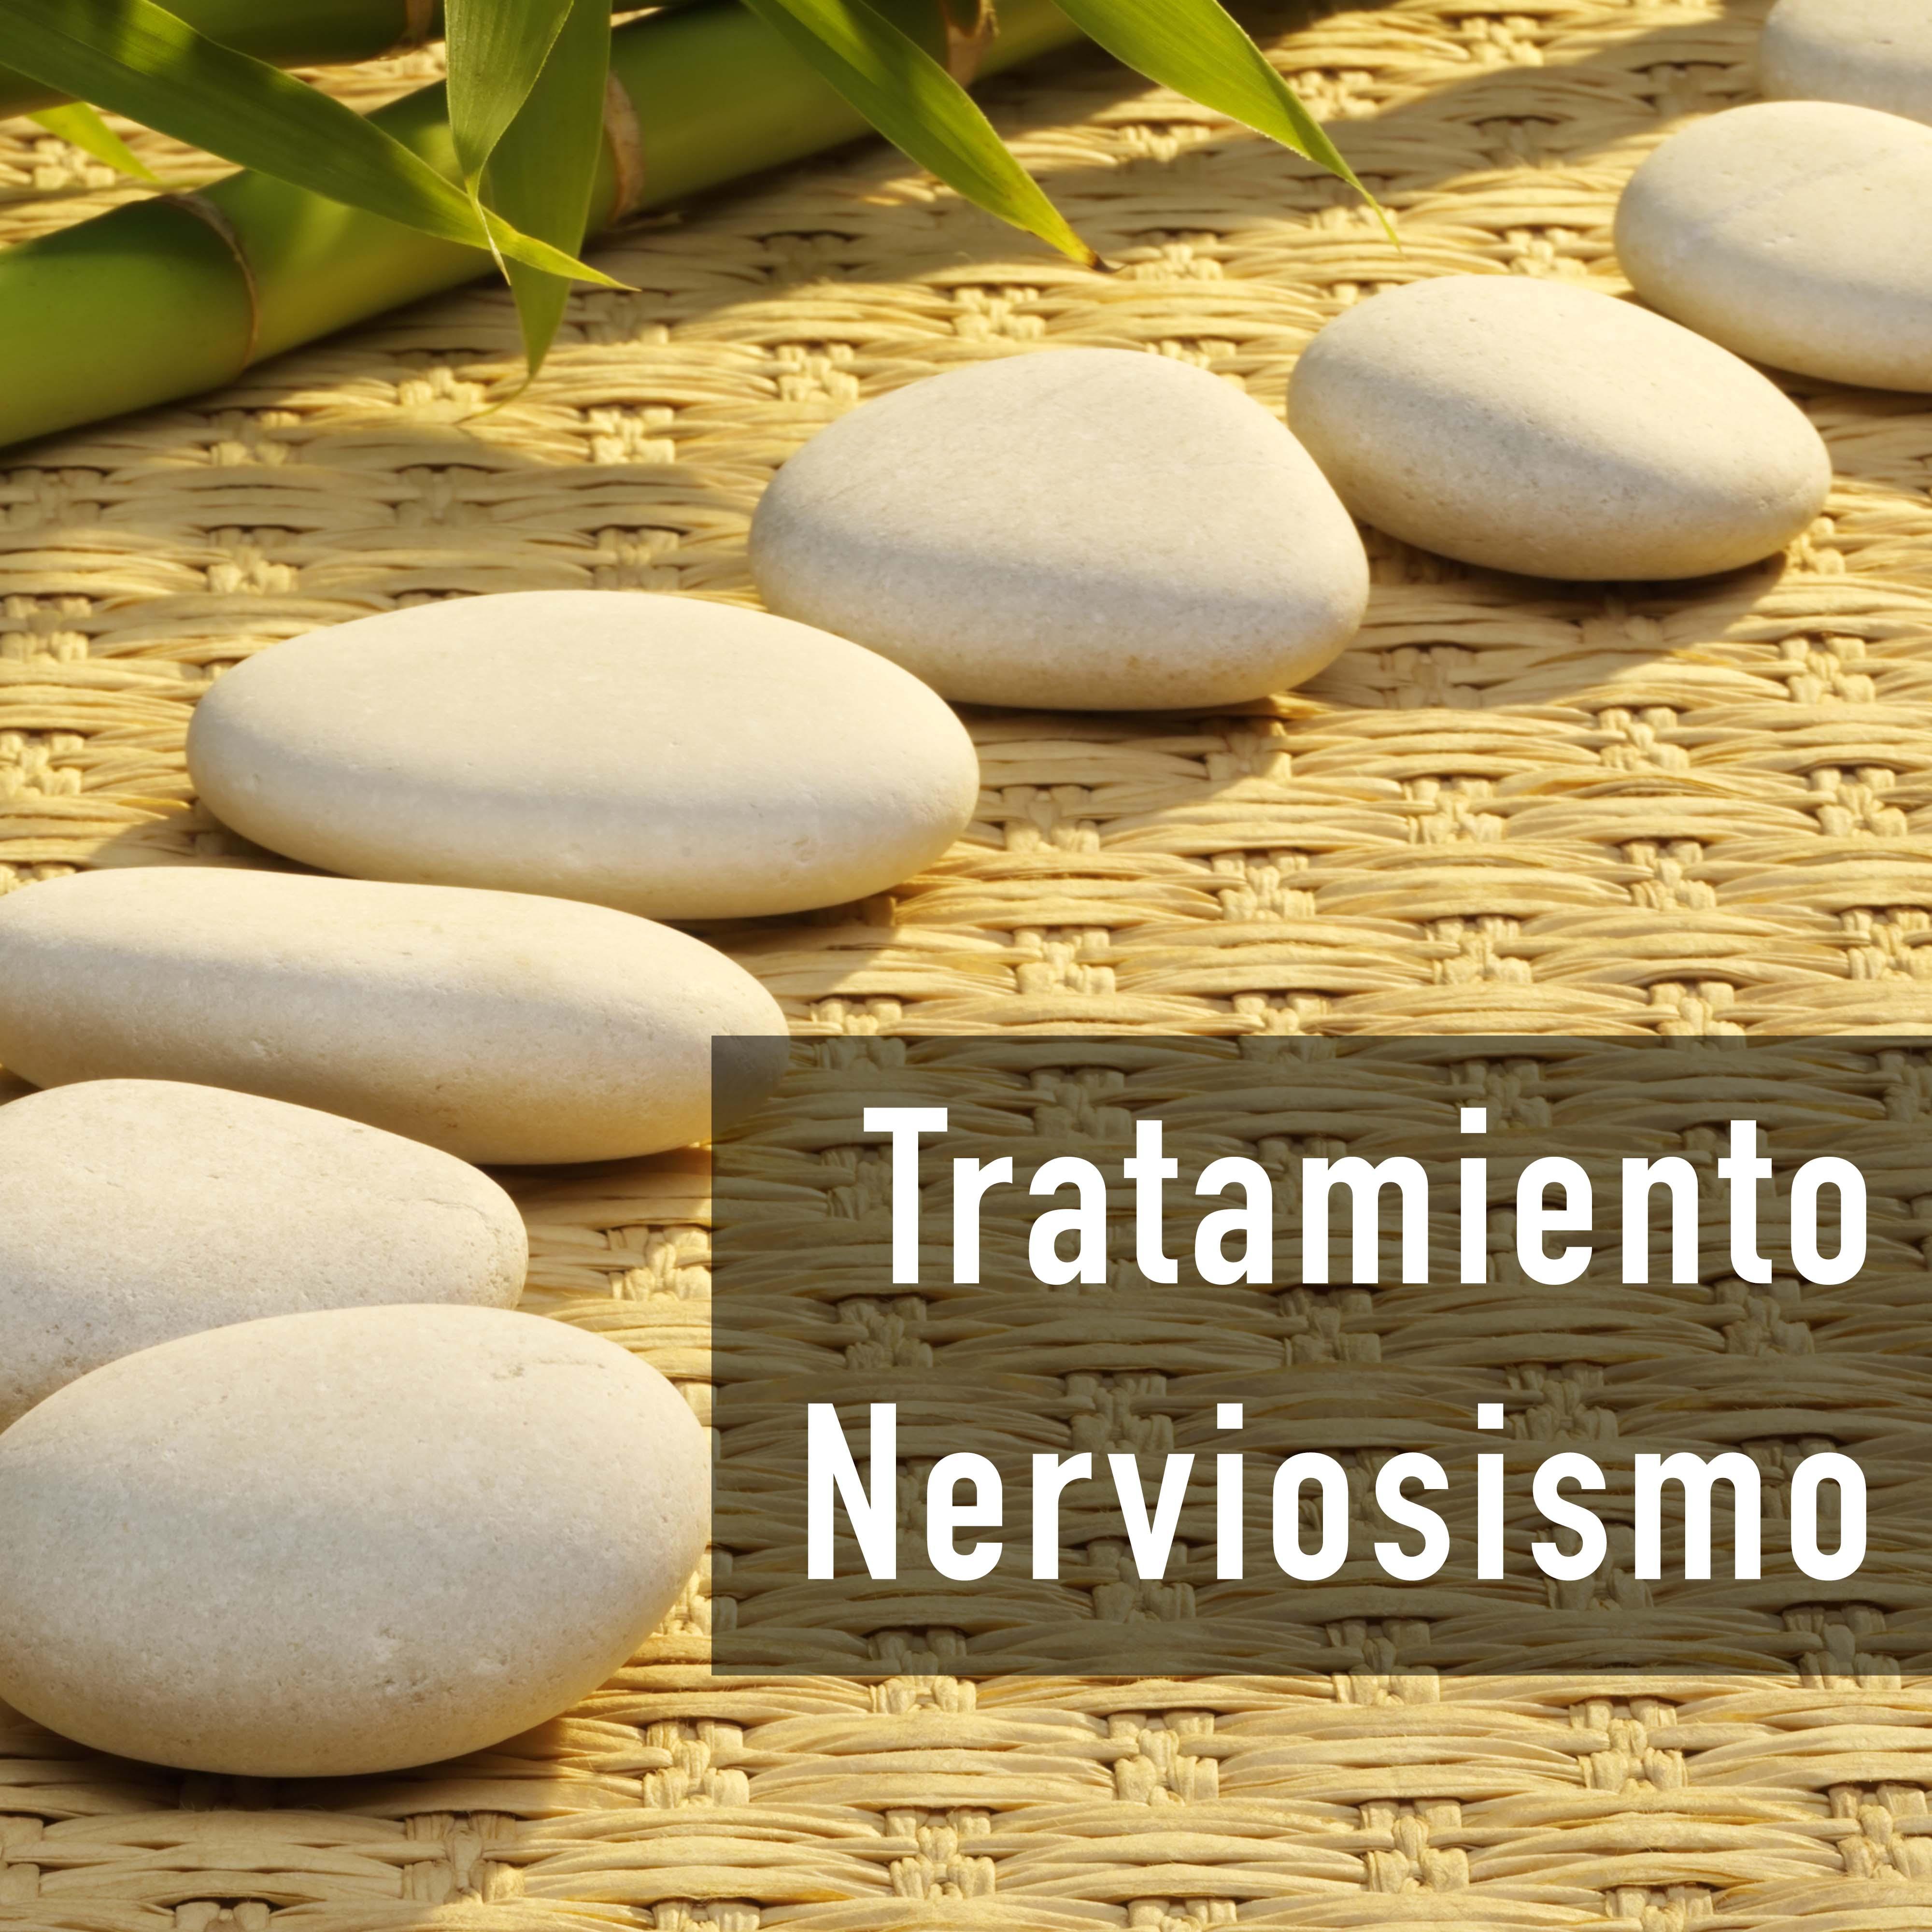 Tratamiento Nerviosismo - Música Relajante y Calmante para Tranquilizar los Nervios